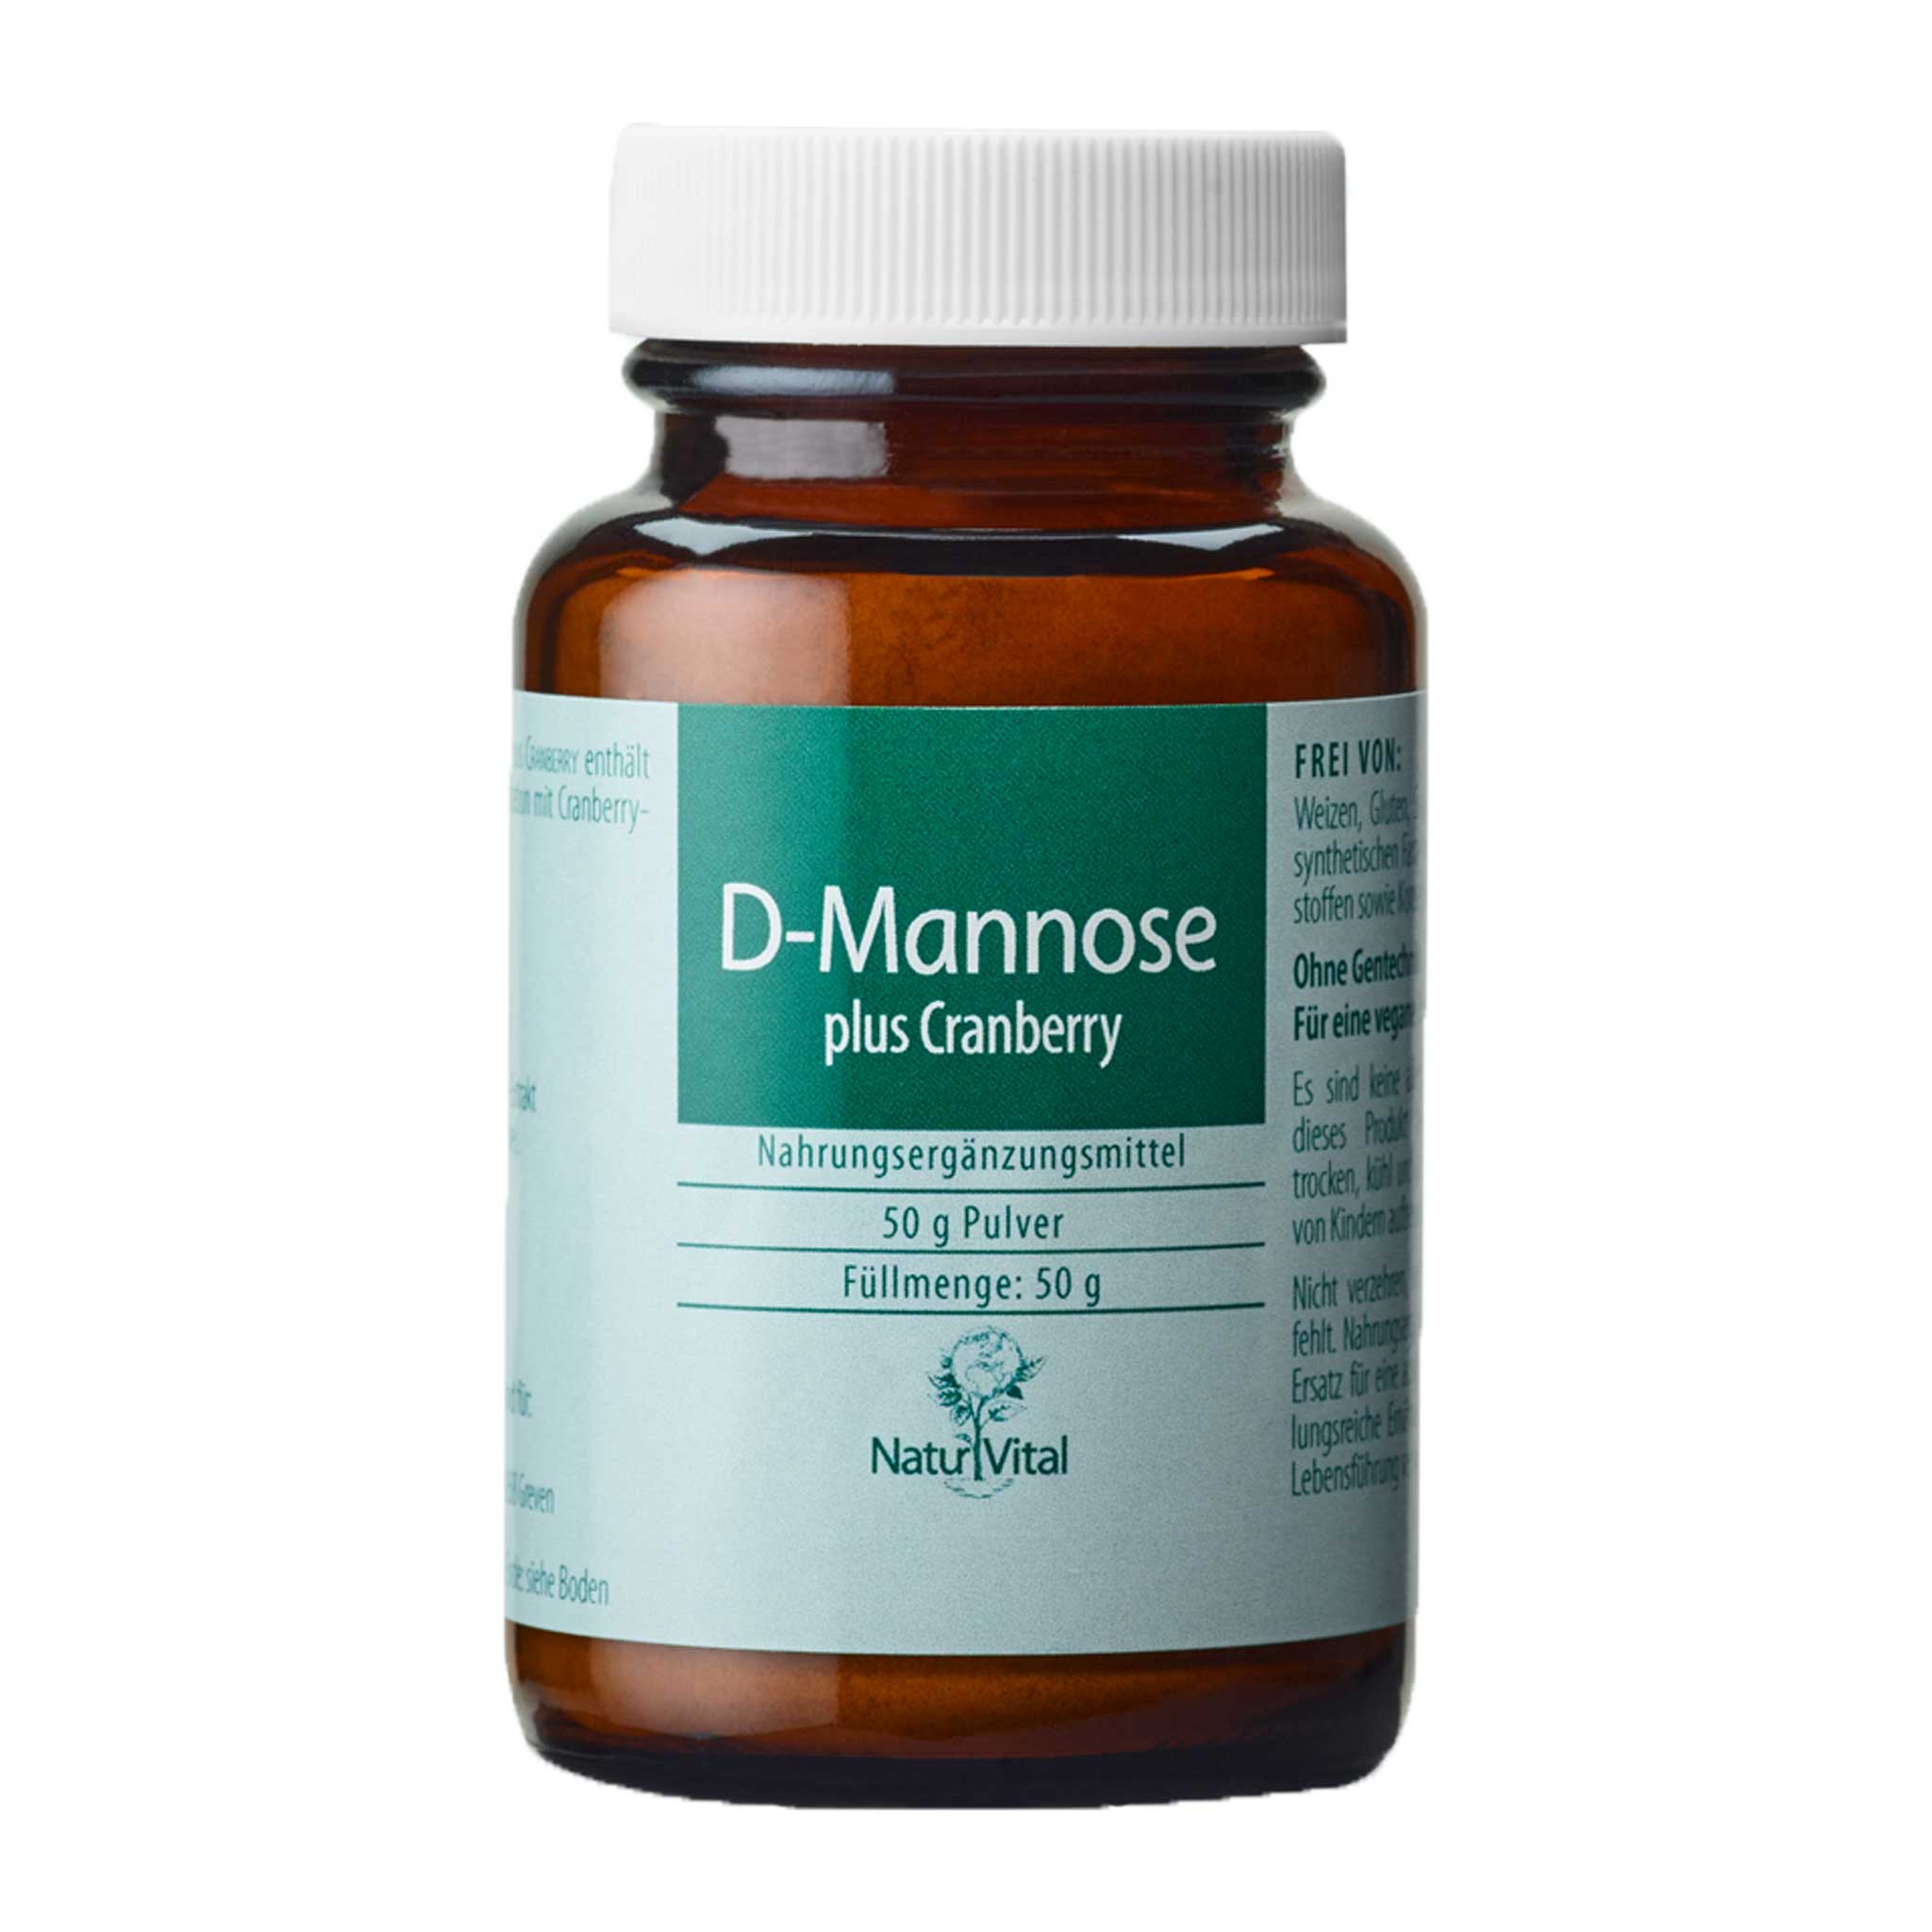 D-Mannose plus Cranberry, 50 g